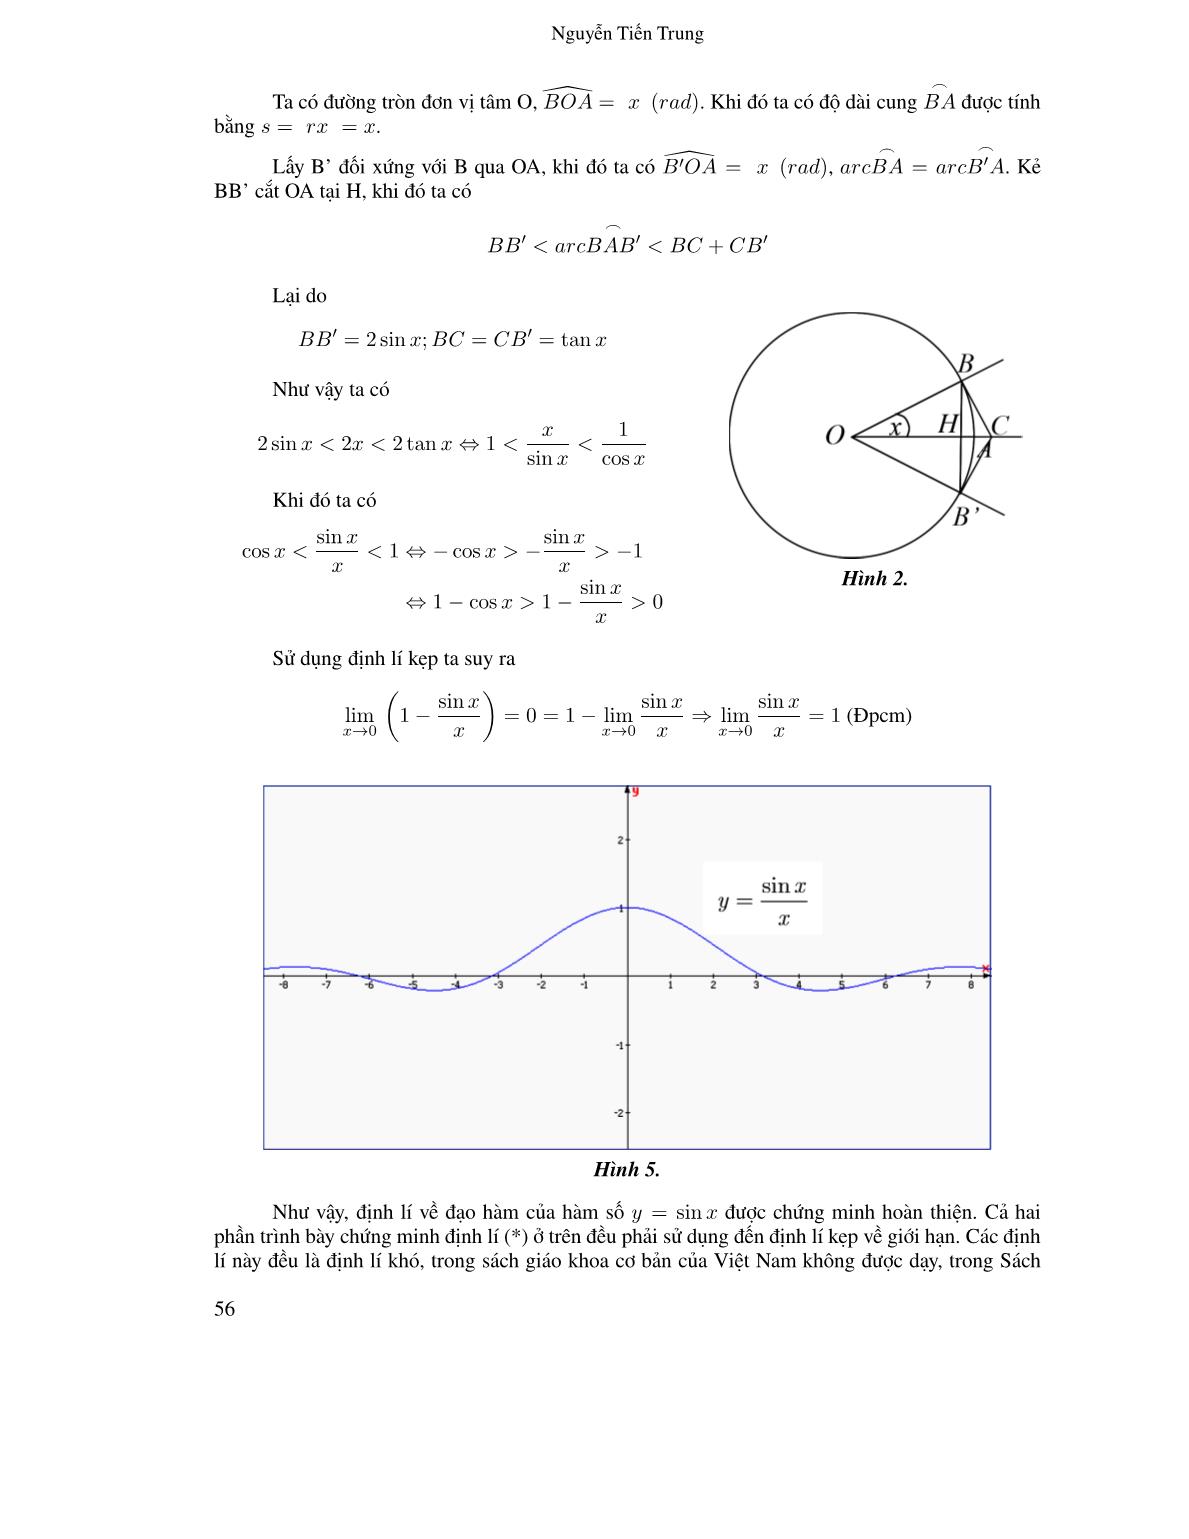 Nghiên cứu chương trình và sách giáo khoa góp phần đổi mới nội dung dạy học môn toán ở trường trung học phổ thông: Trường hợp dạy học đạo hàm của hàm số y = sin x trang 4